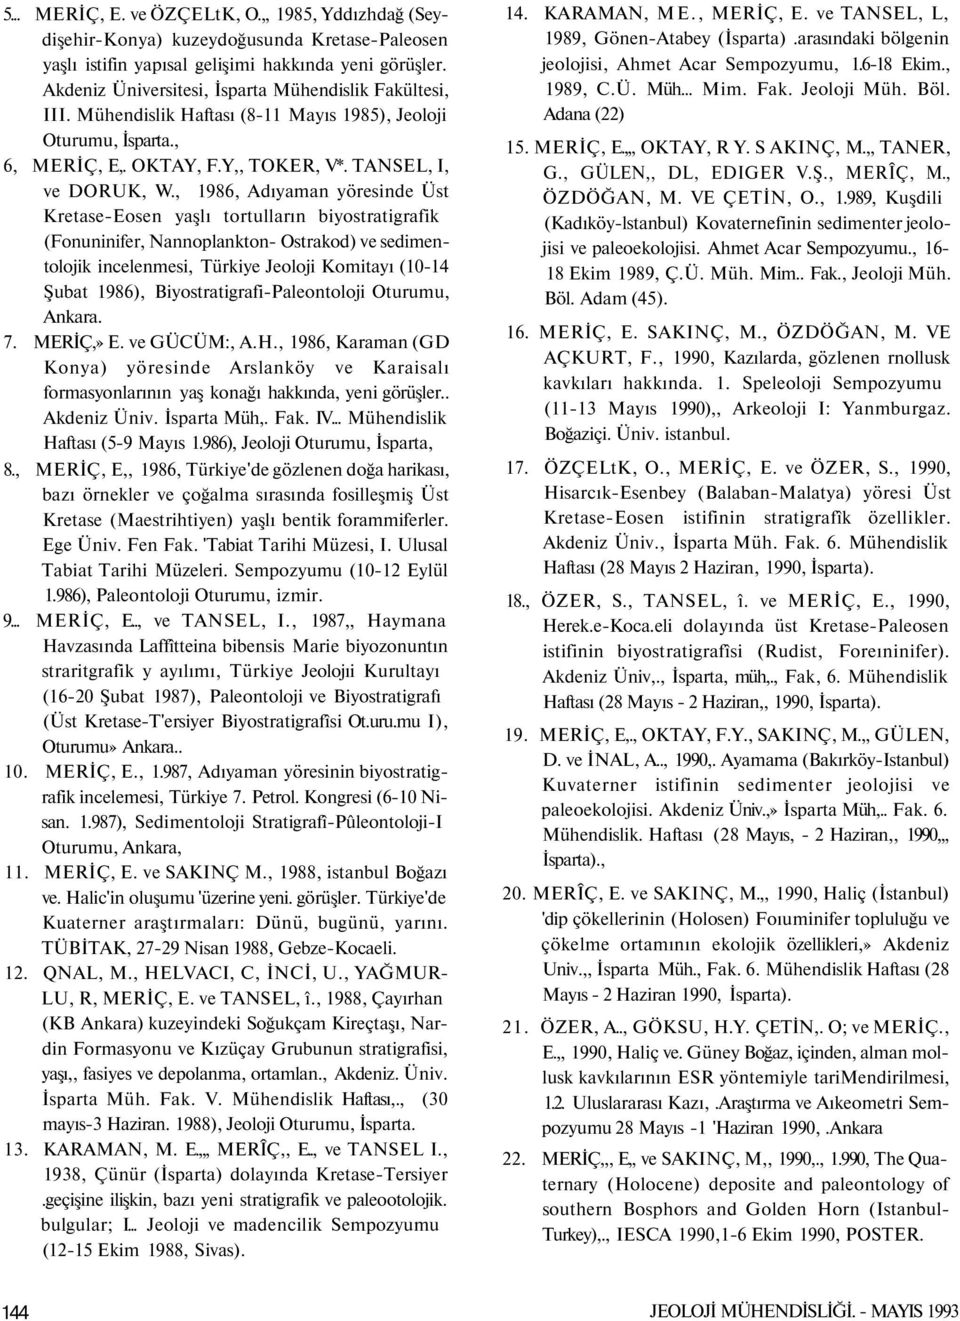 , 1986, Adıyaman yöresinde Üst Kretase-Eosen yaşlı tortulların biyostratigrafik (Fonuninifer, Nannoplankton- Ostrakod) ve sedimentolojik incelenmesi, Türkiye Jeoloji Komitayı (10-14 Şubat 1986),